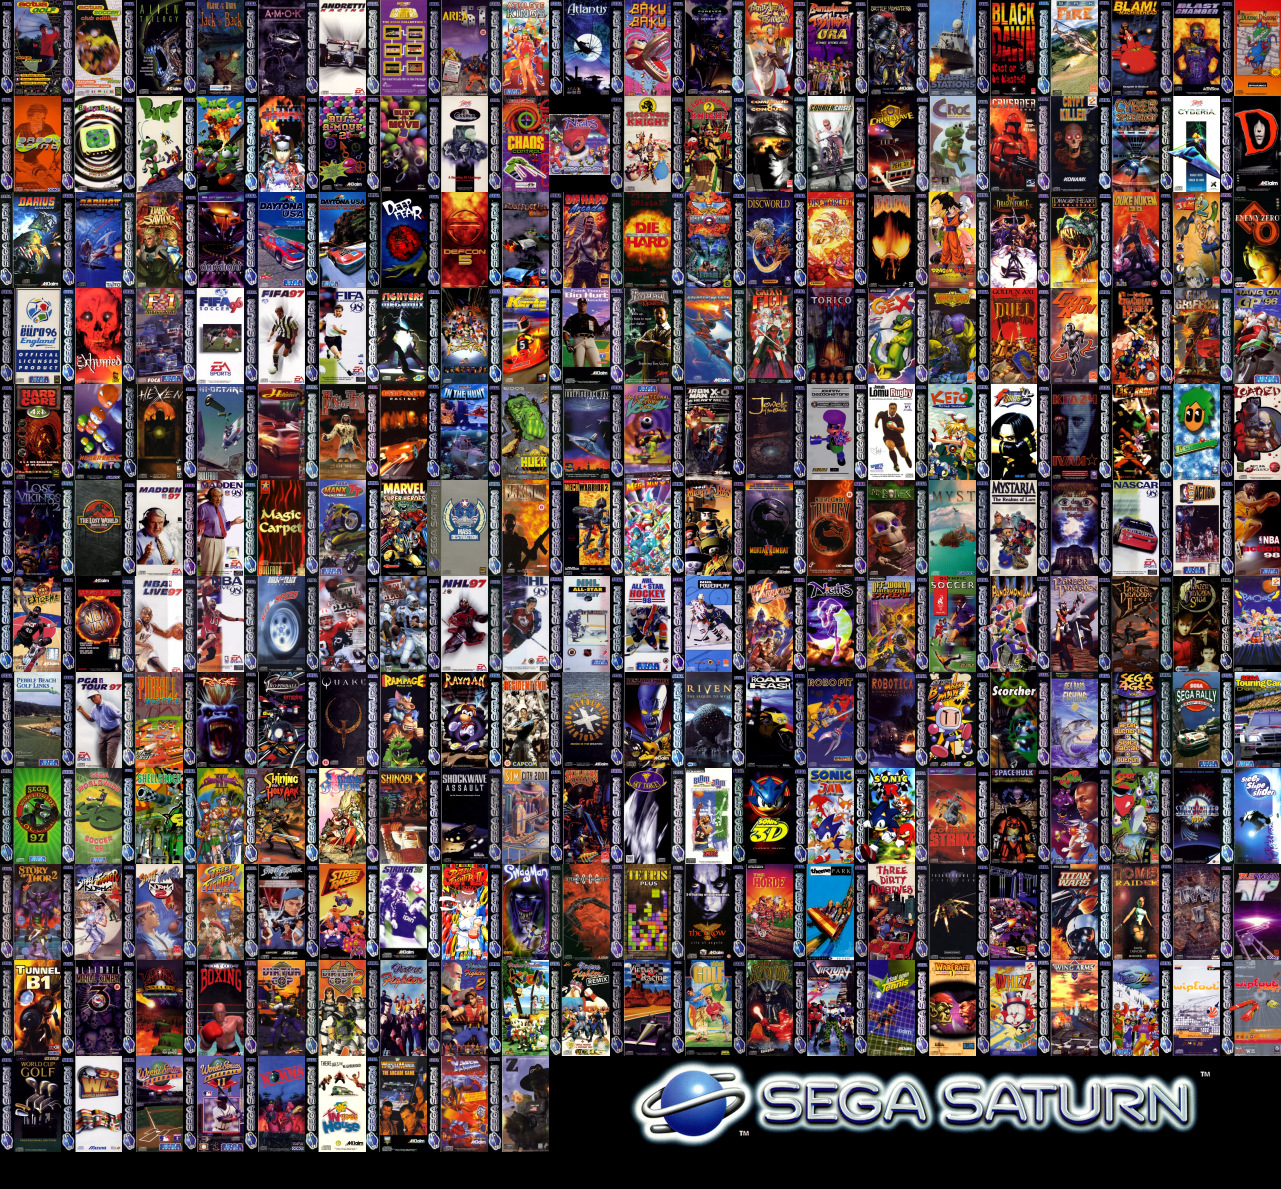 Sega Saturn Wallpaper - WallpaperSafari1281 x 1189